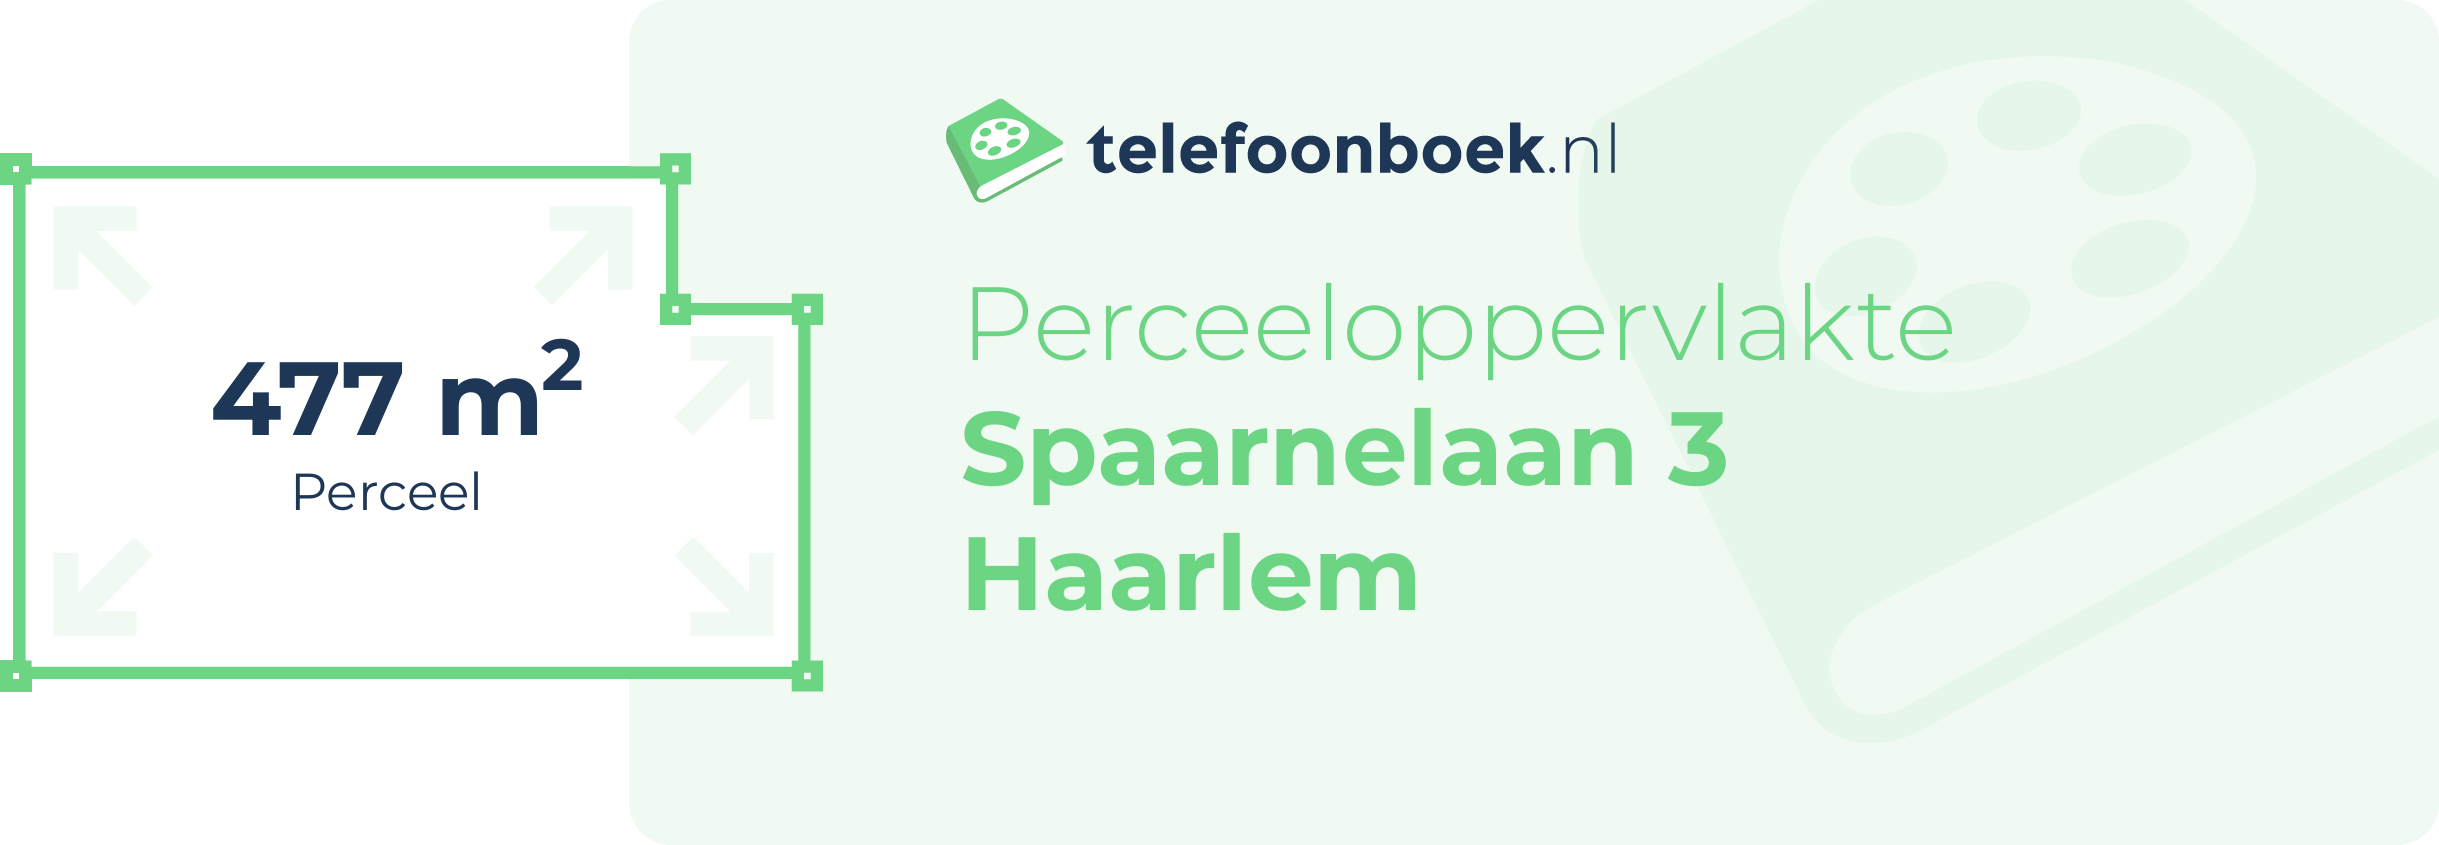 Perceeloppervlakte Spaarnelaan 3 Haarlem